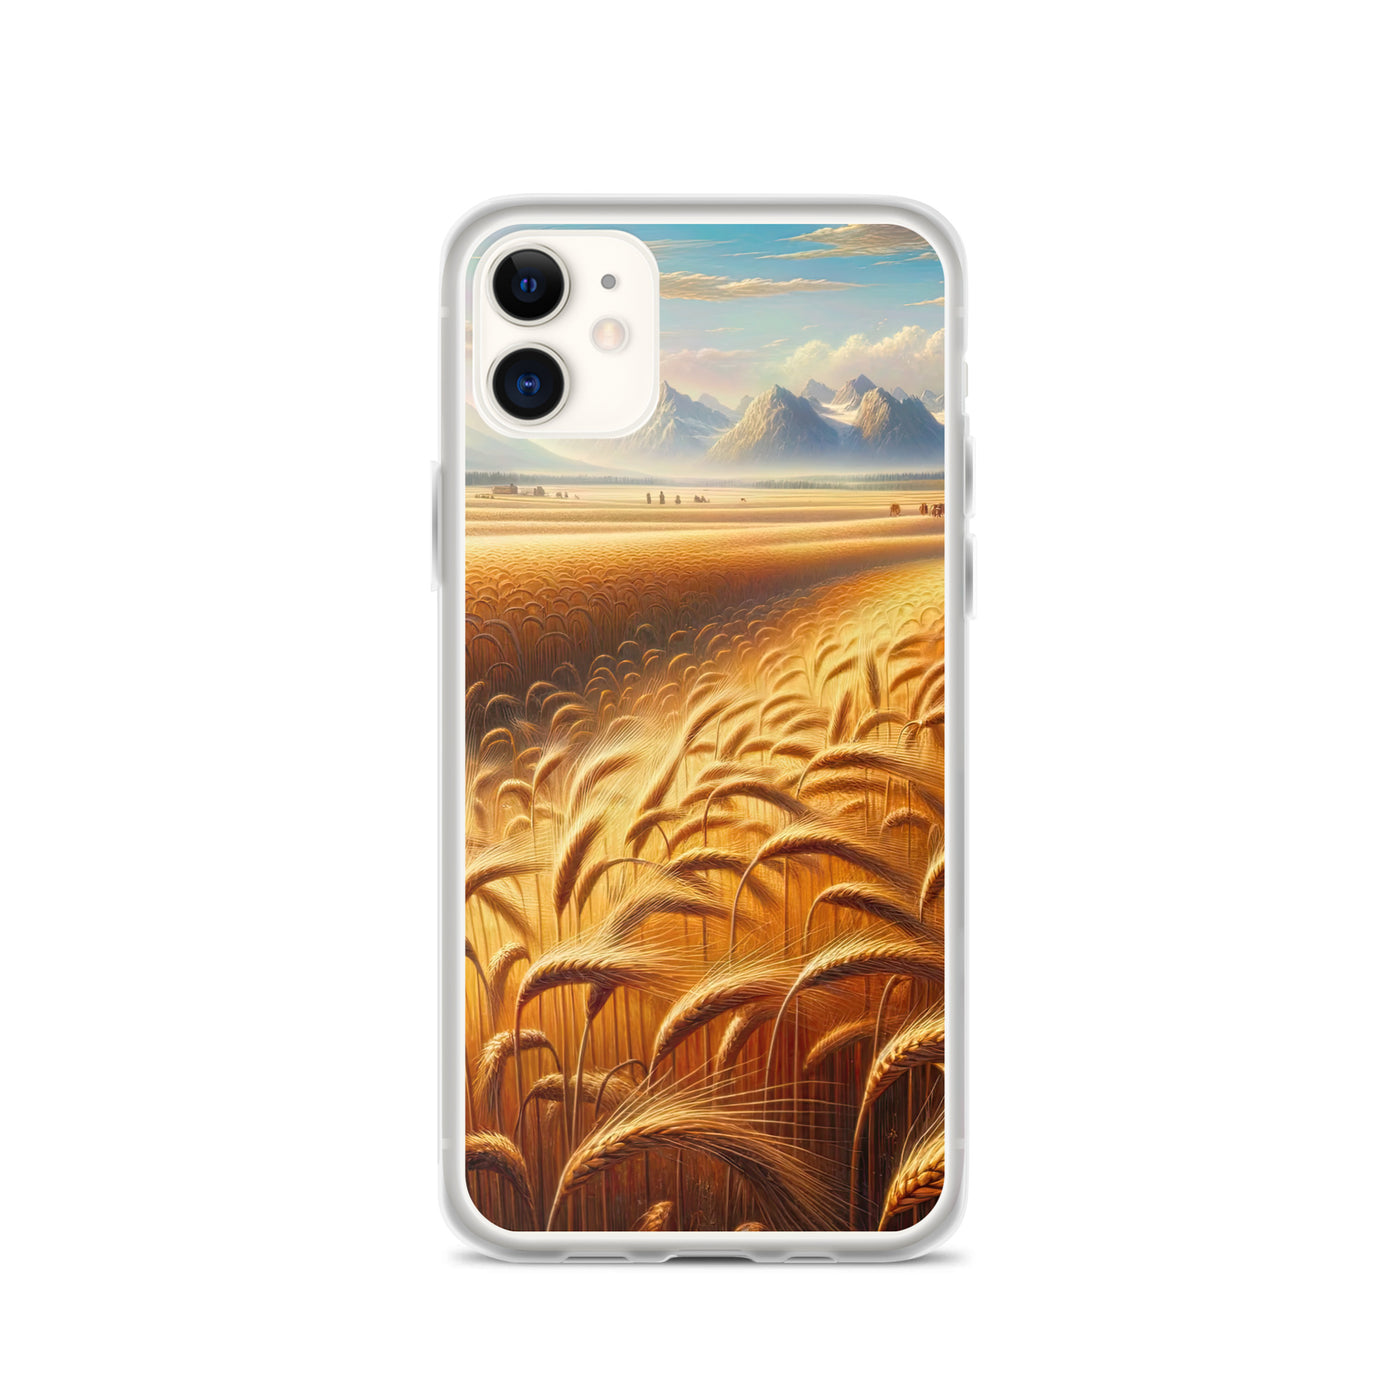 Ölgemälde eines bayerischen Weizenfeldes, endlose goldene Halme (TR) - iPhone Schutzhülle (durchsichtig) xxx yyy zzz iPhone 11